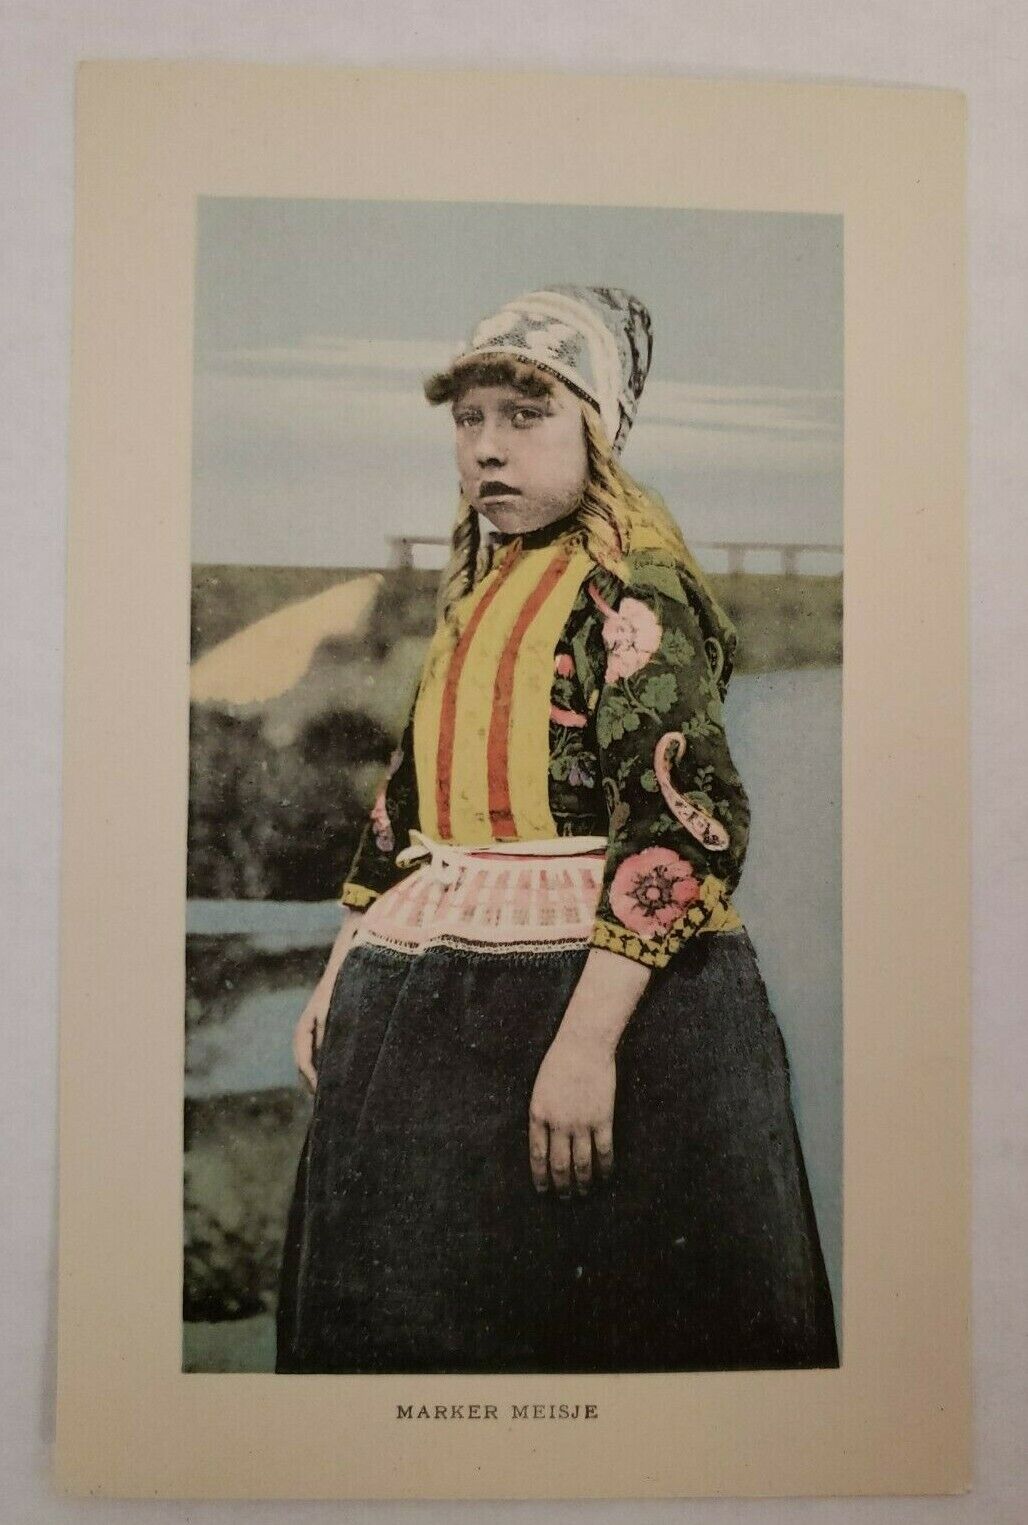 Antique Postcard Marker Meisje Female Unmarried Girl Dutch